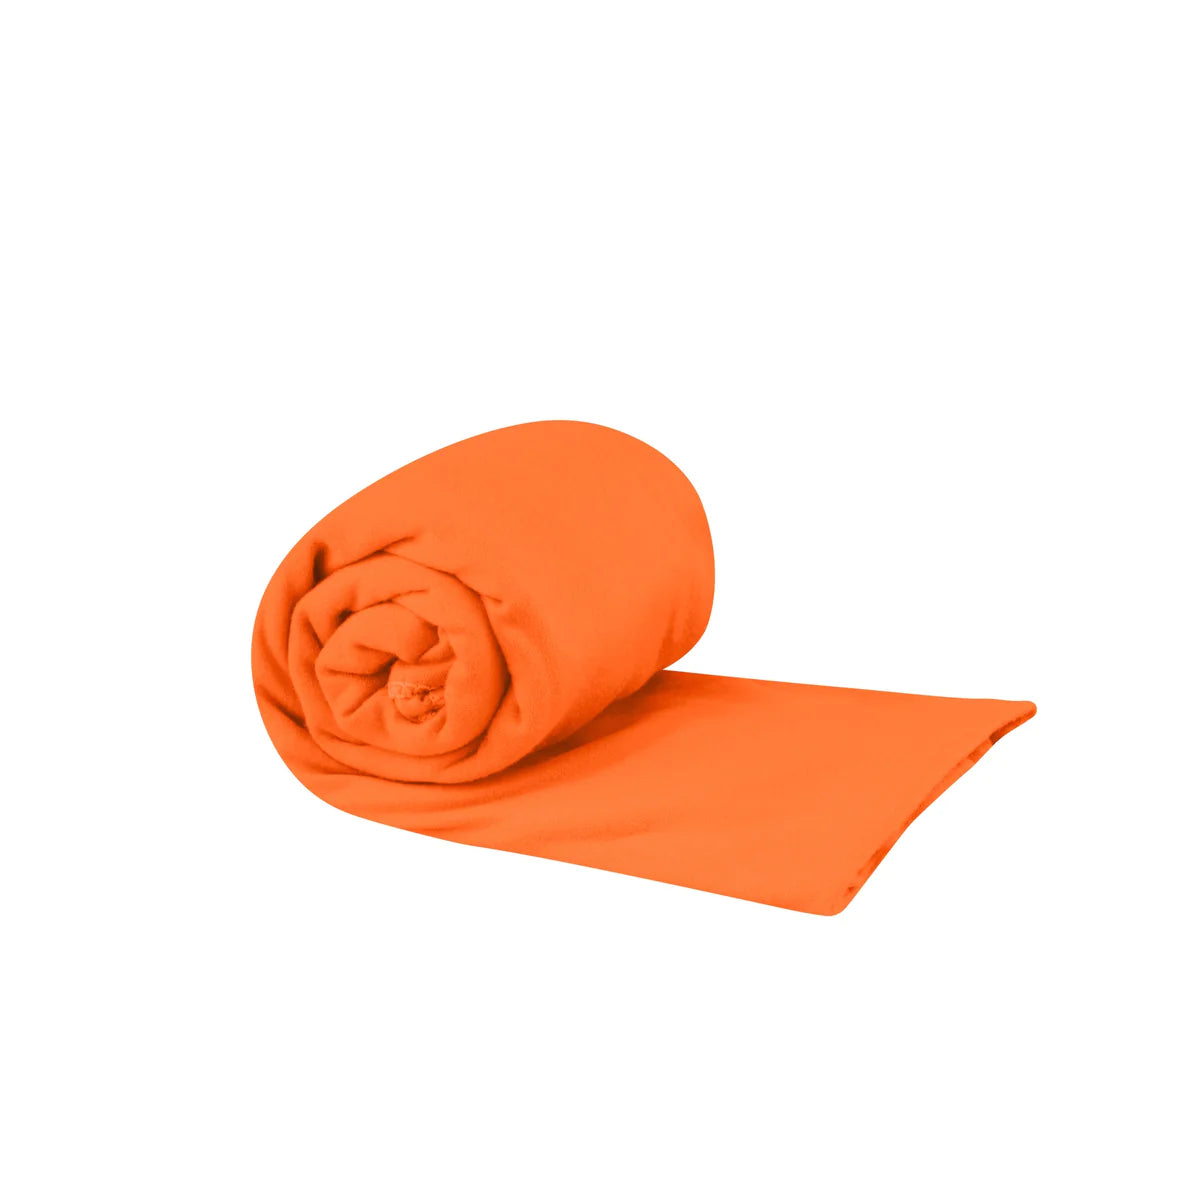 Sea to Summit - Pocket Towel Medium - Outback Orange-1